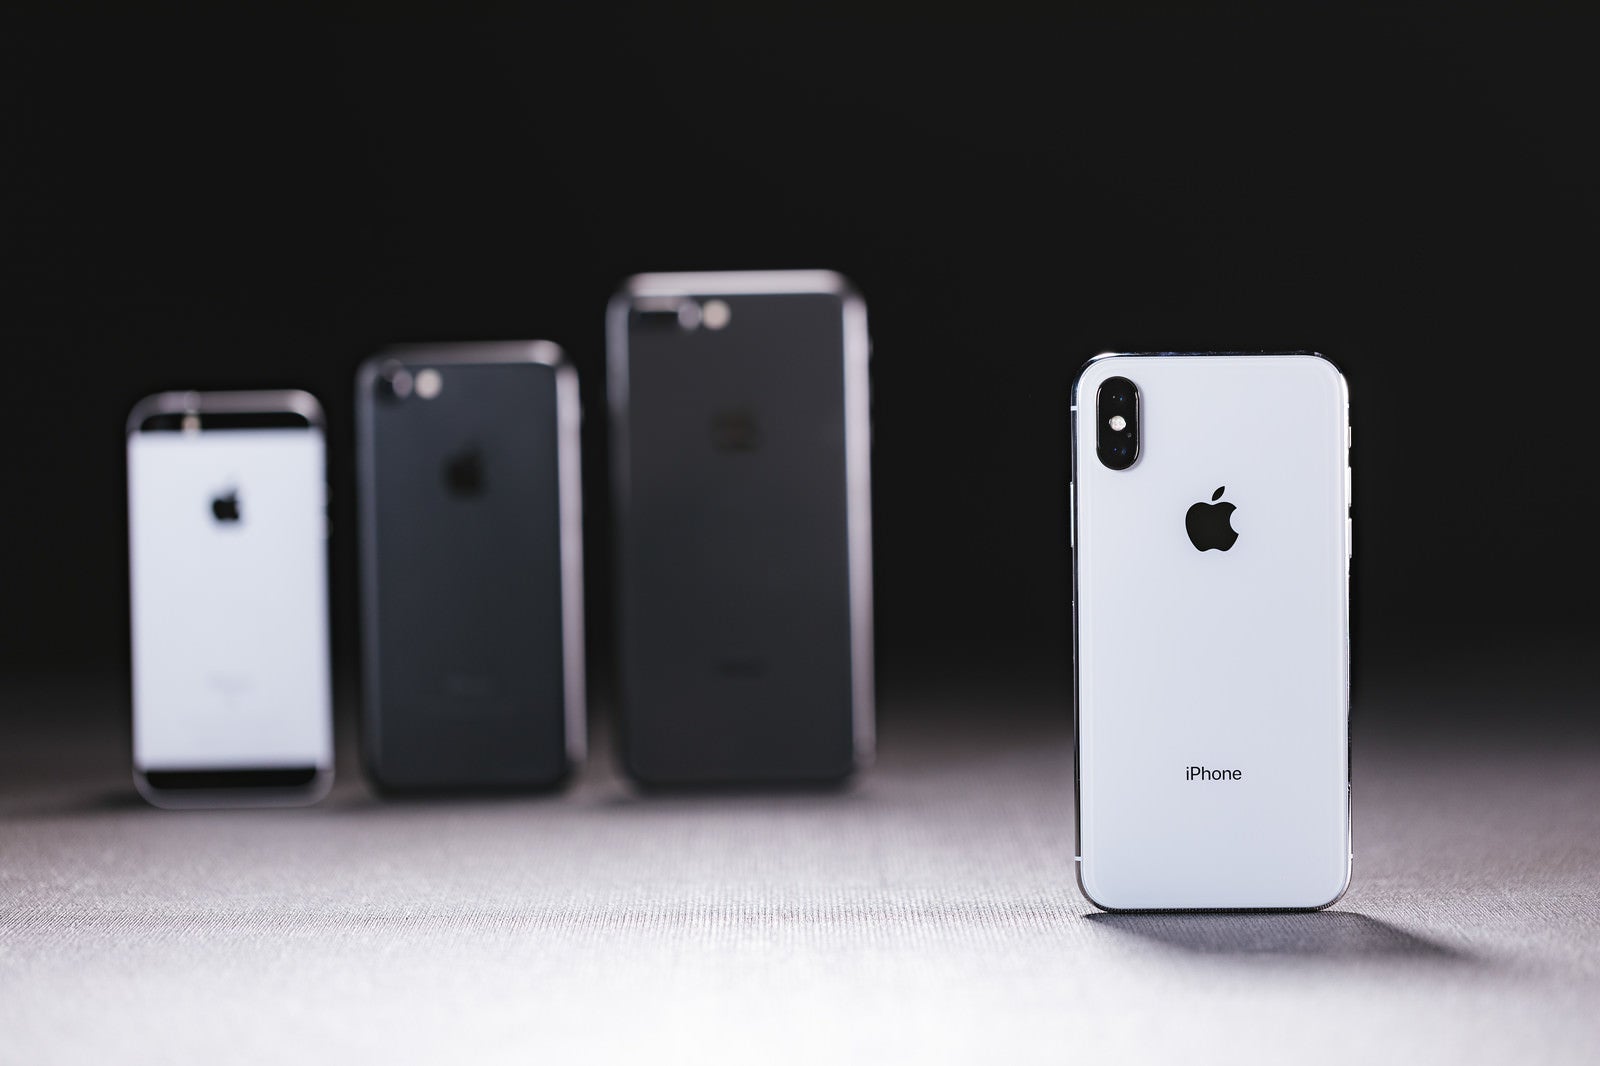 「旧モデルの iPhone と最新の iPhone X を並べる」の写真